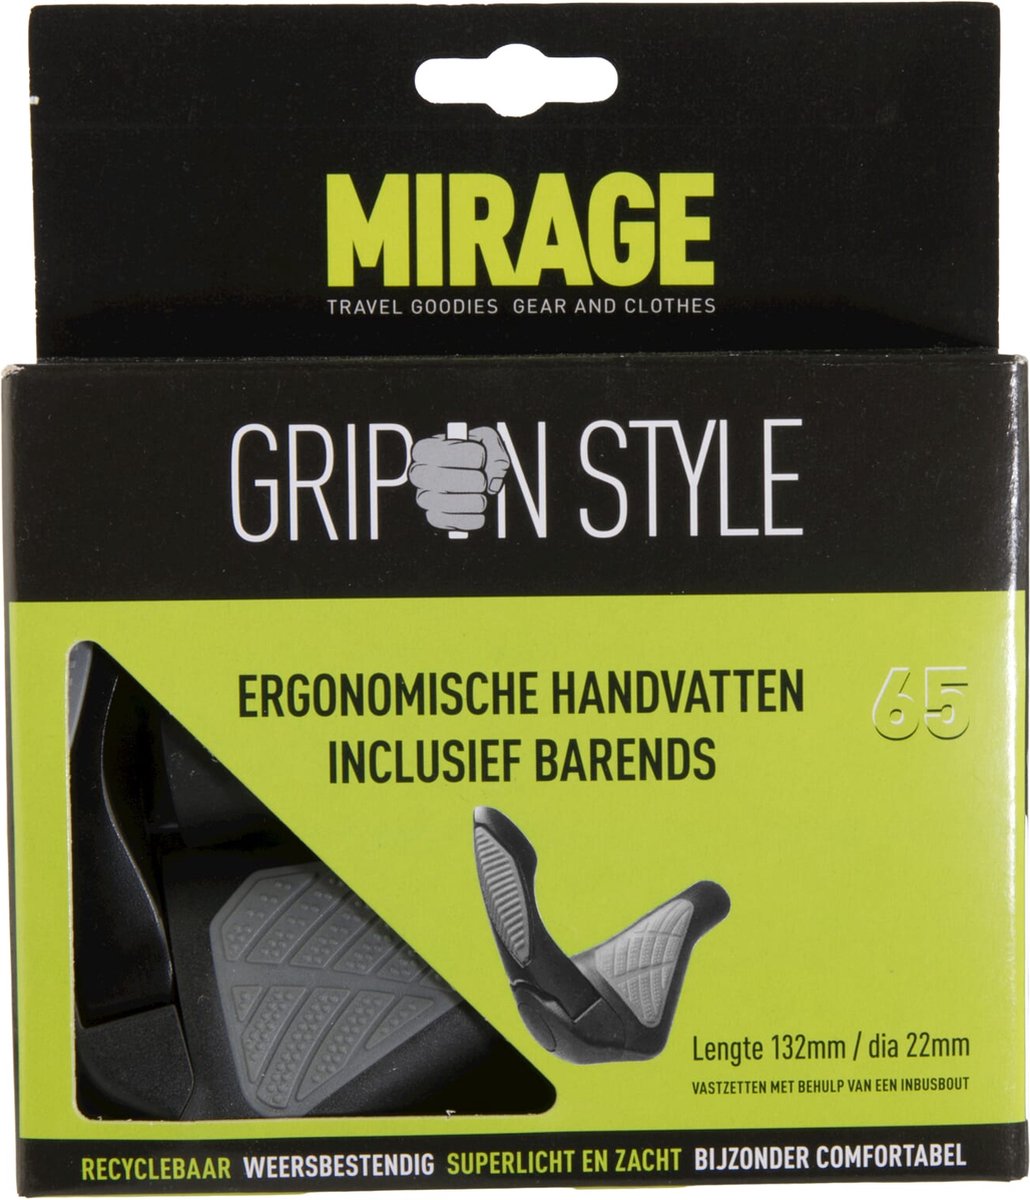 Mirage handvattenset grips in style 134mm met barend zwart/grijs